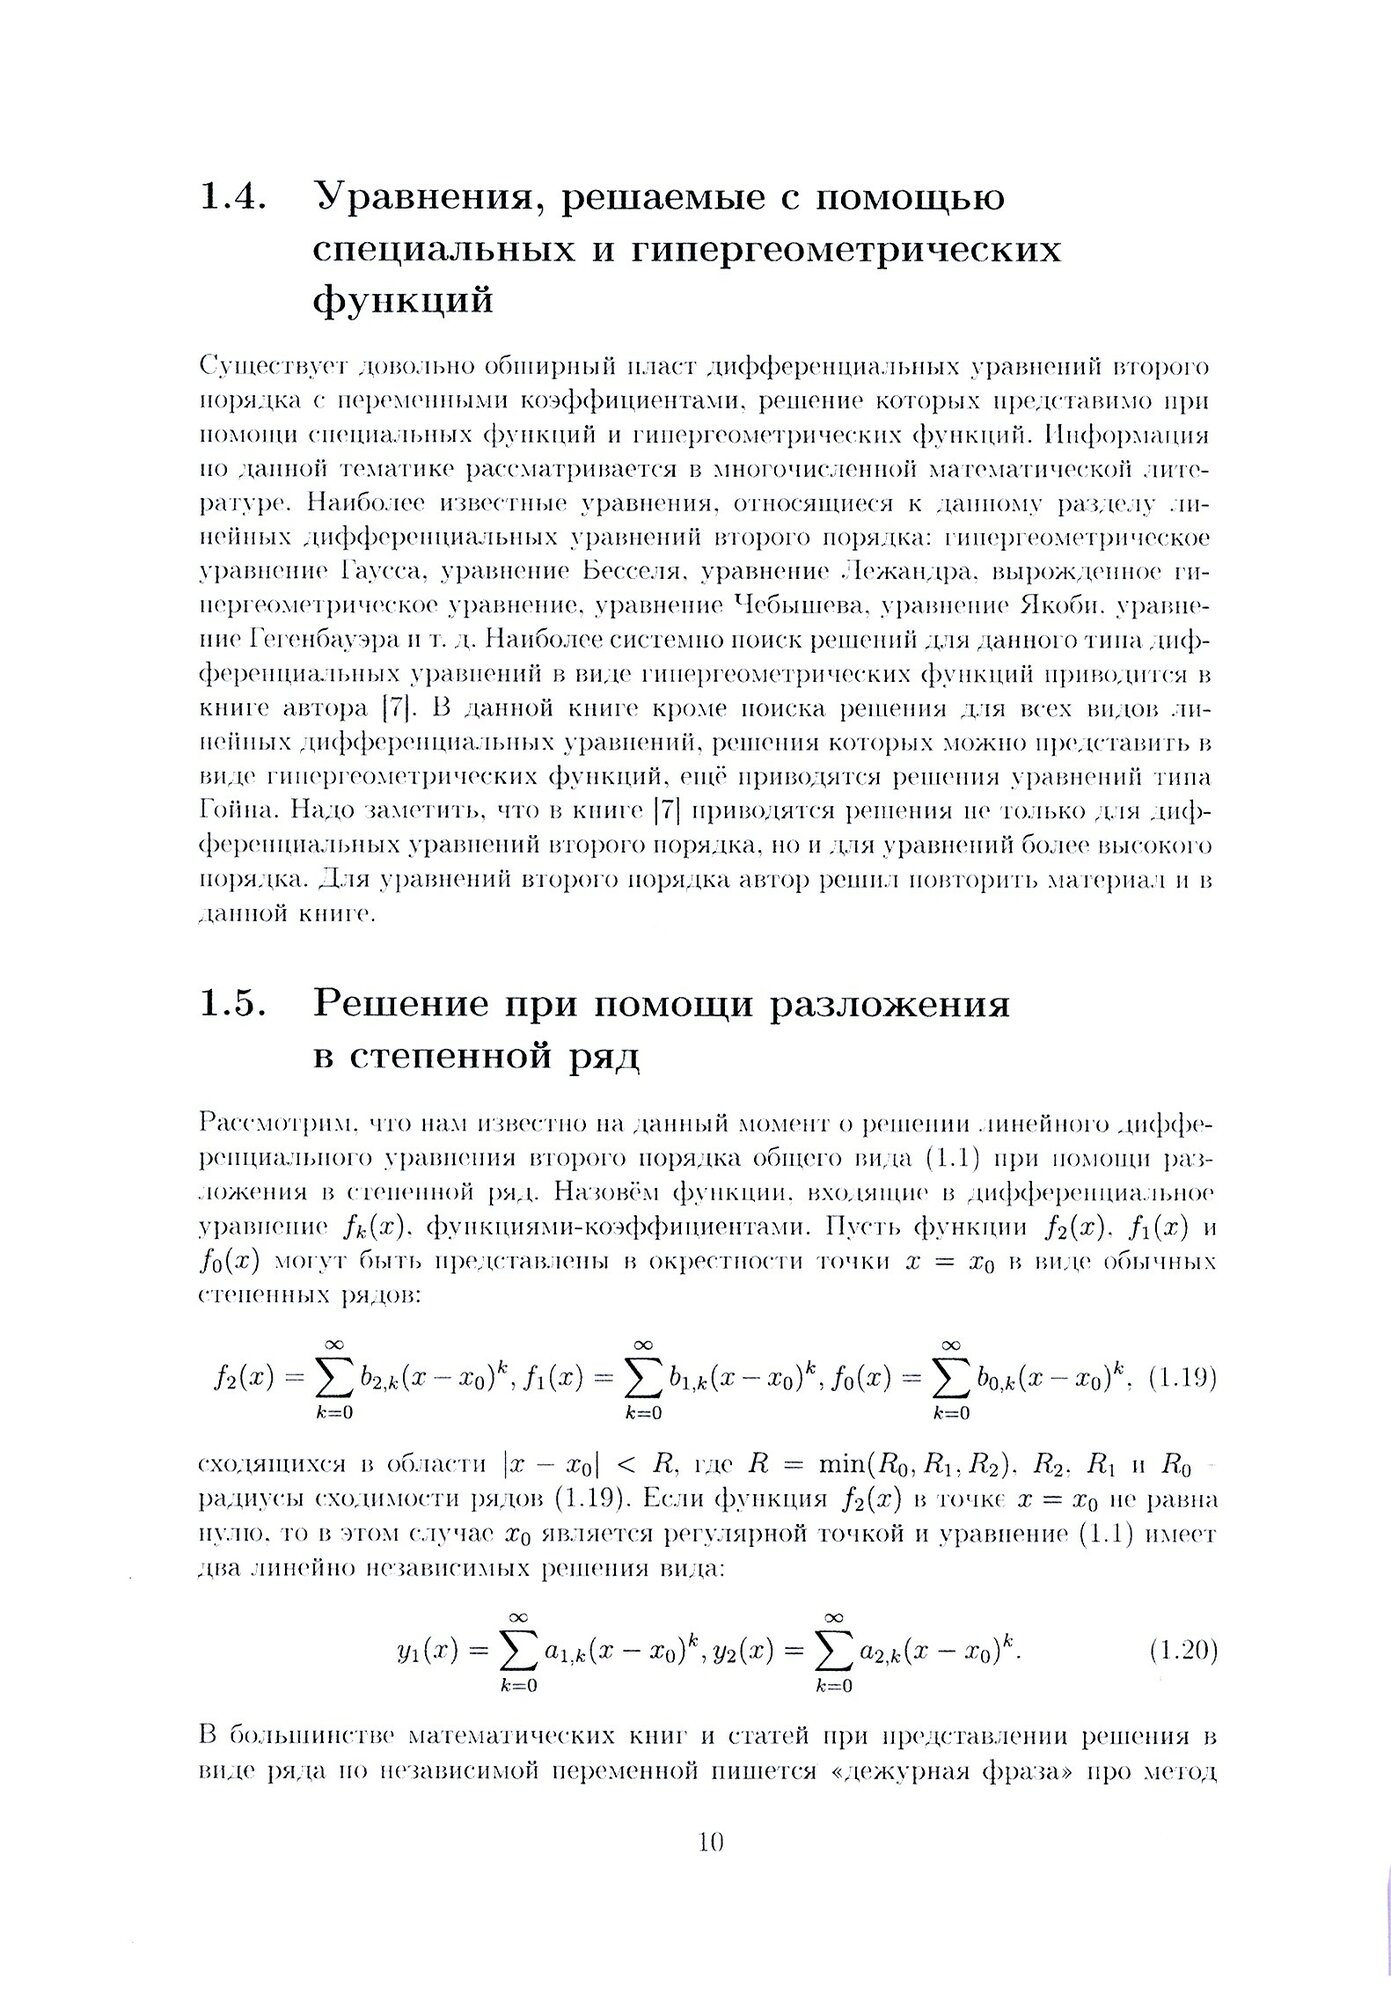 Дифференциальные уравнения второго порядка - фото №6